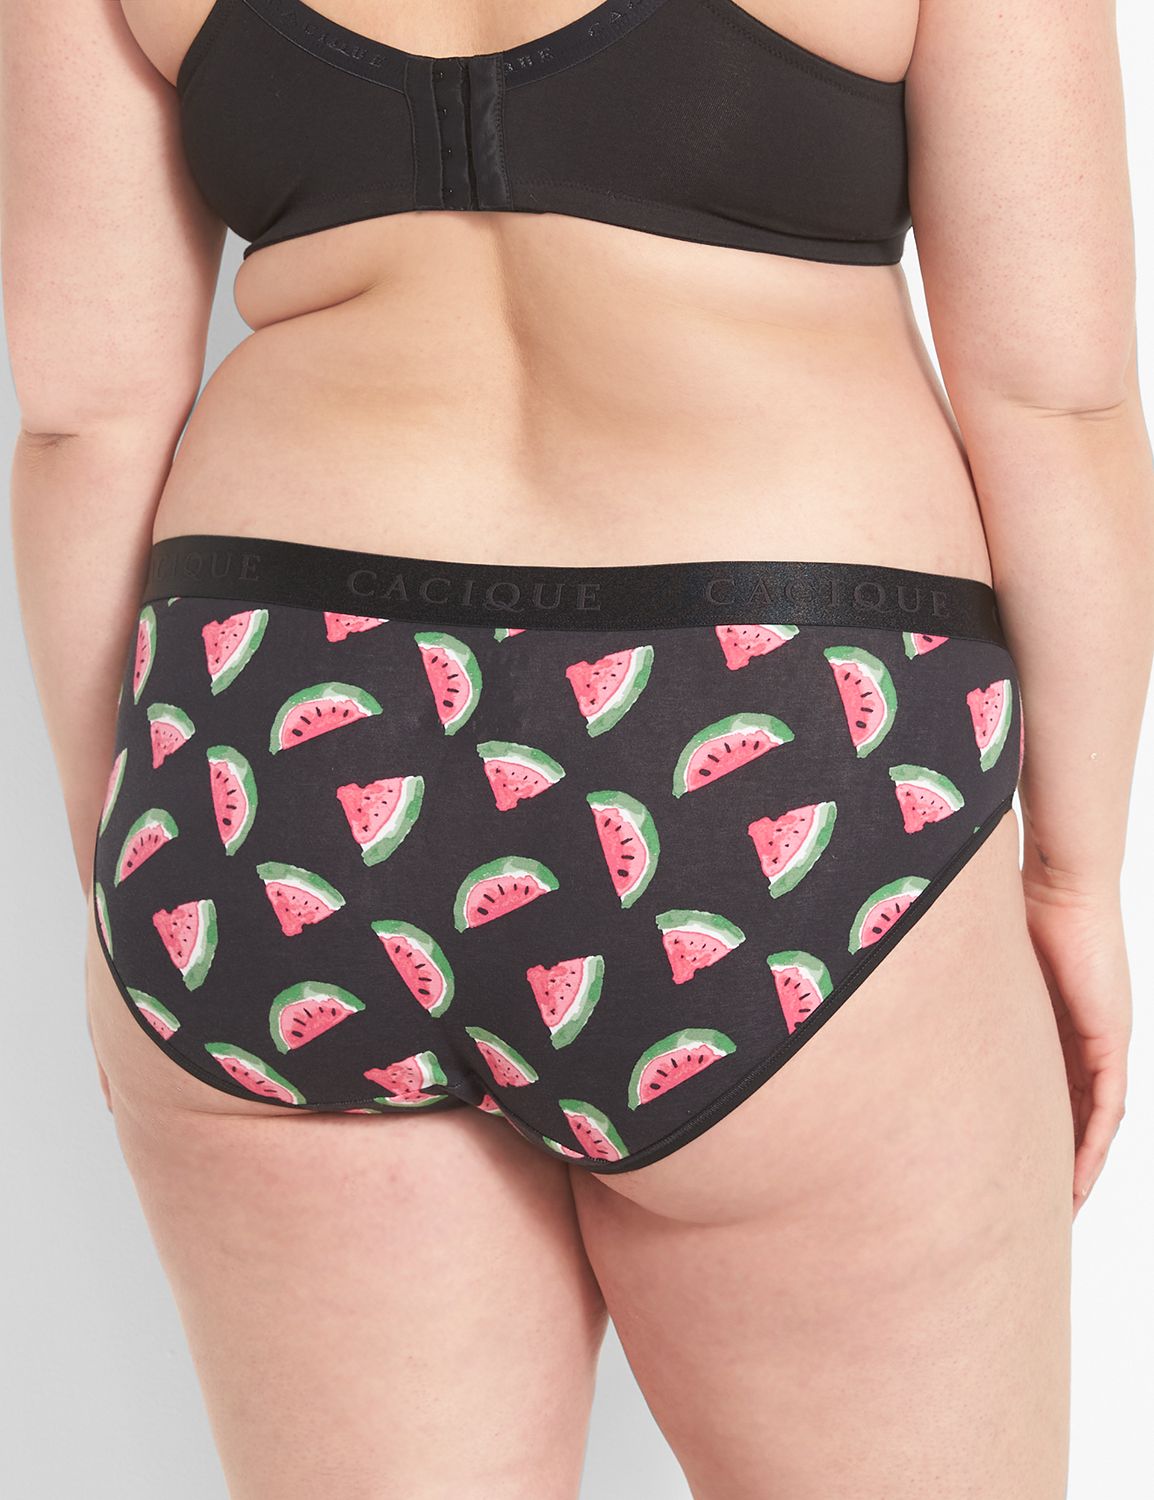 Women Underwear Watermelon, Briefs Watermelon Print